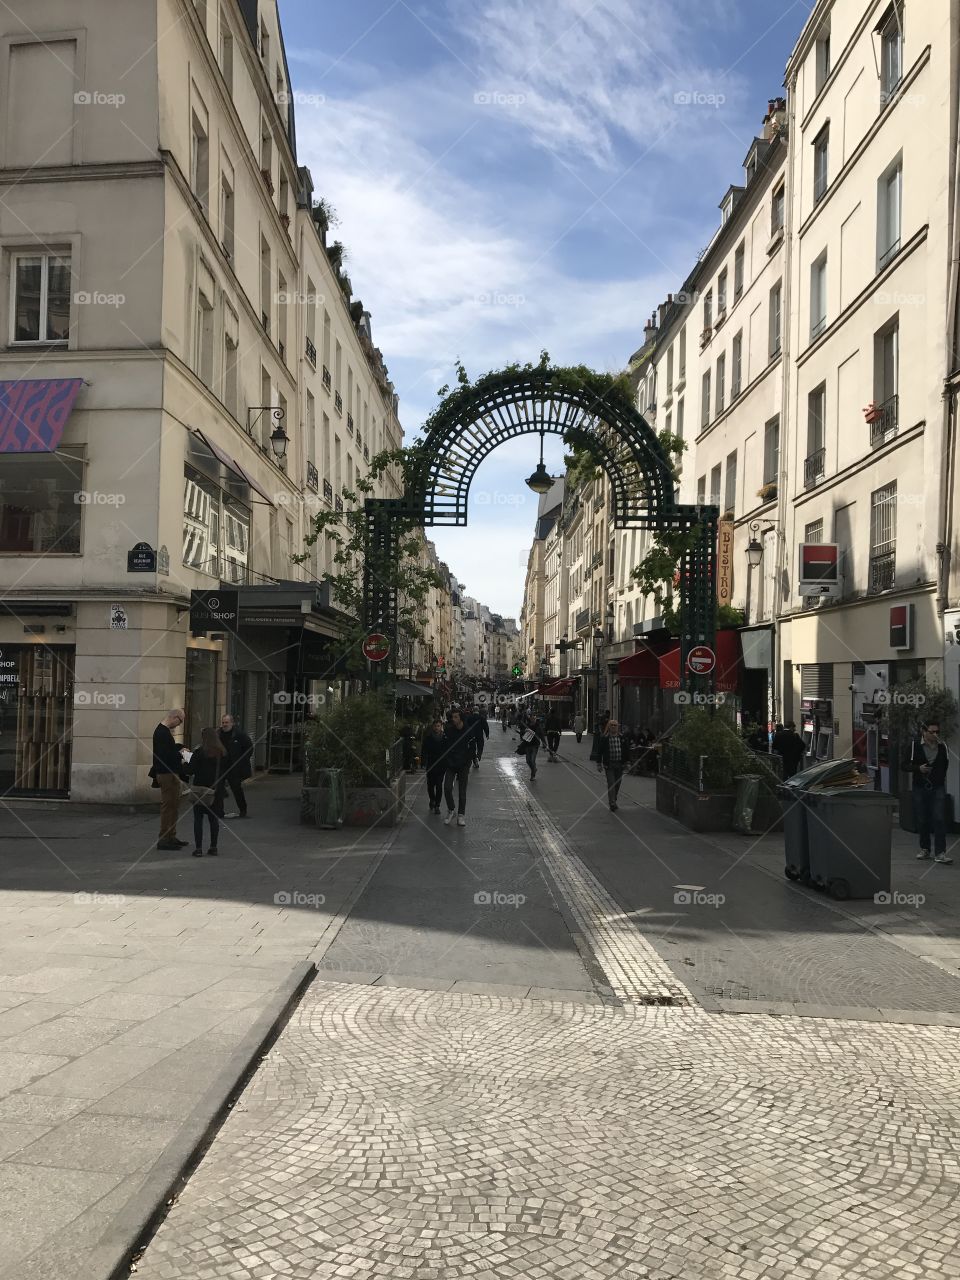 Paris market